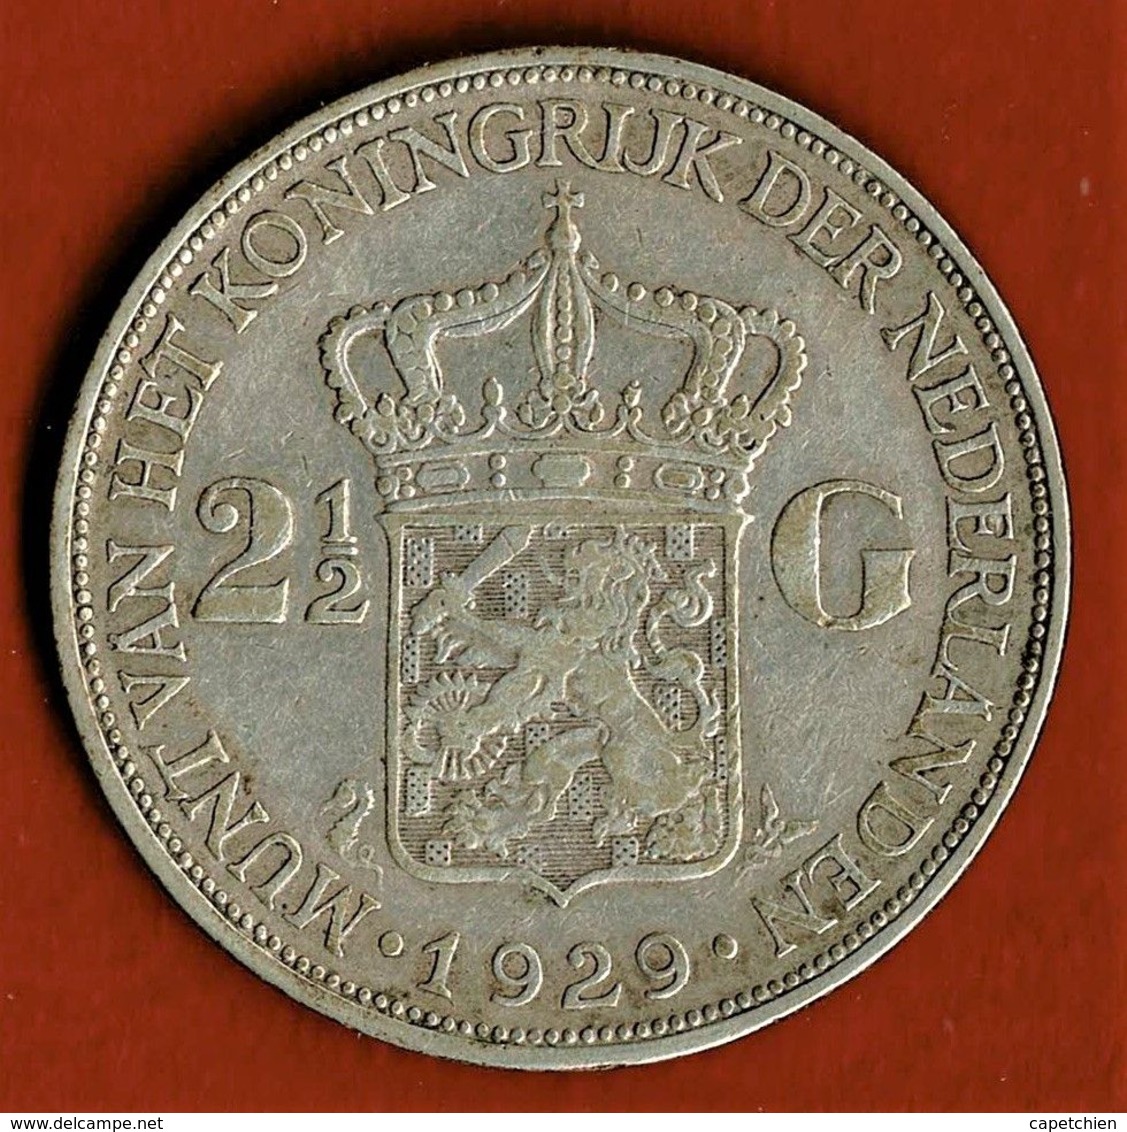 PAYS BAS / WILHELMINA / 2 1/2 GULDEN / 1929 / ETAT SUP. - 2 1/2 Florín Holandés (Gulden)